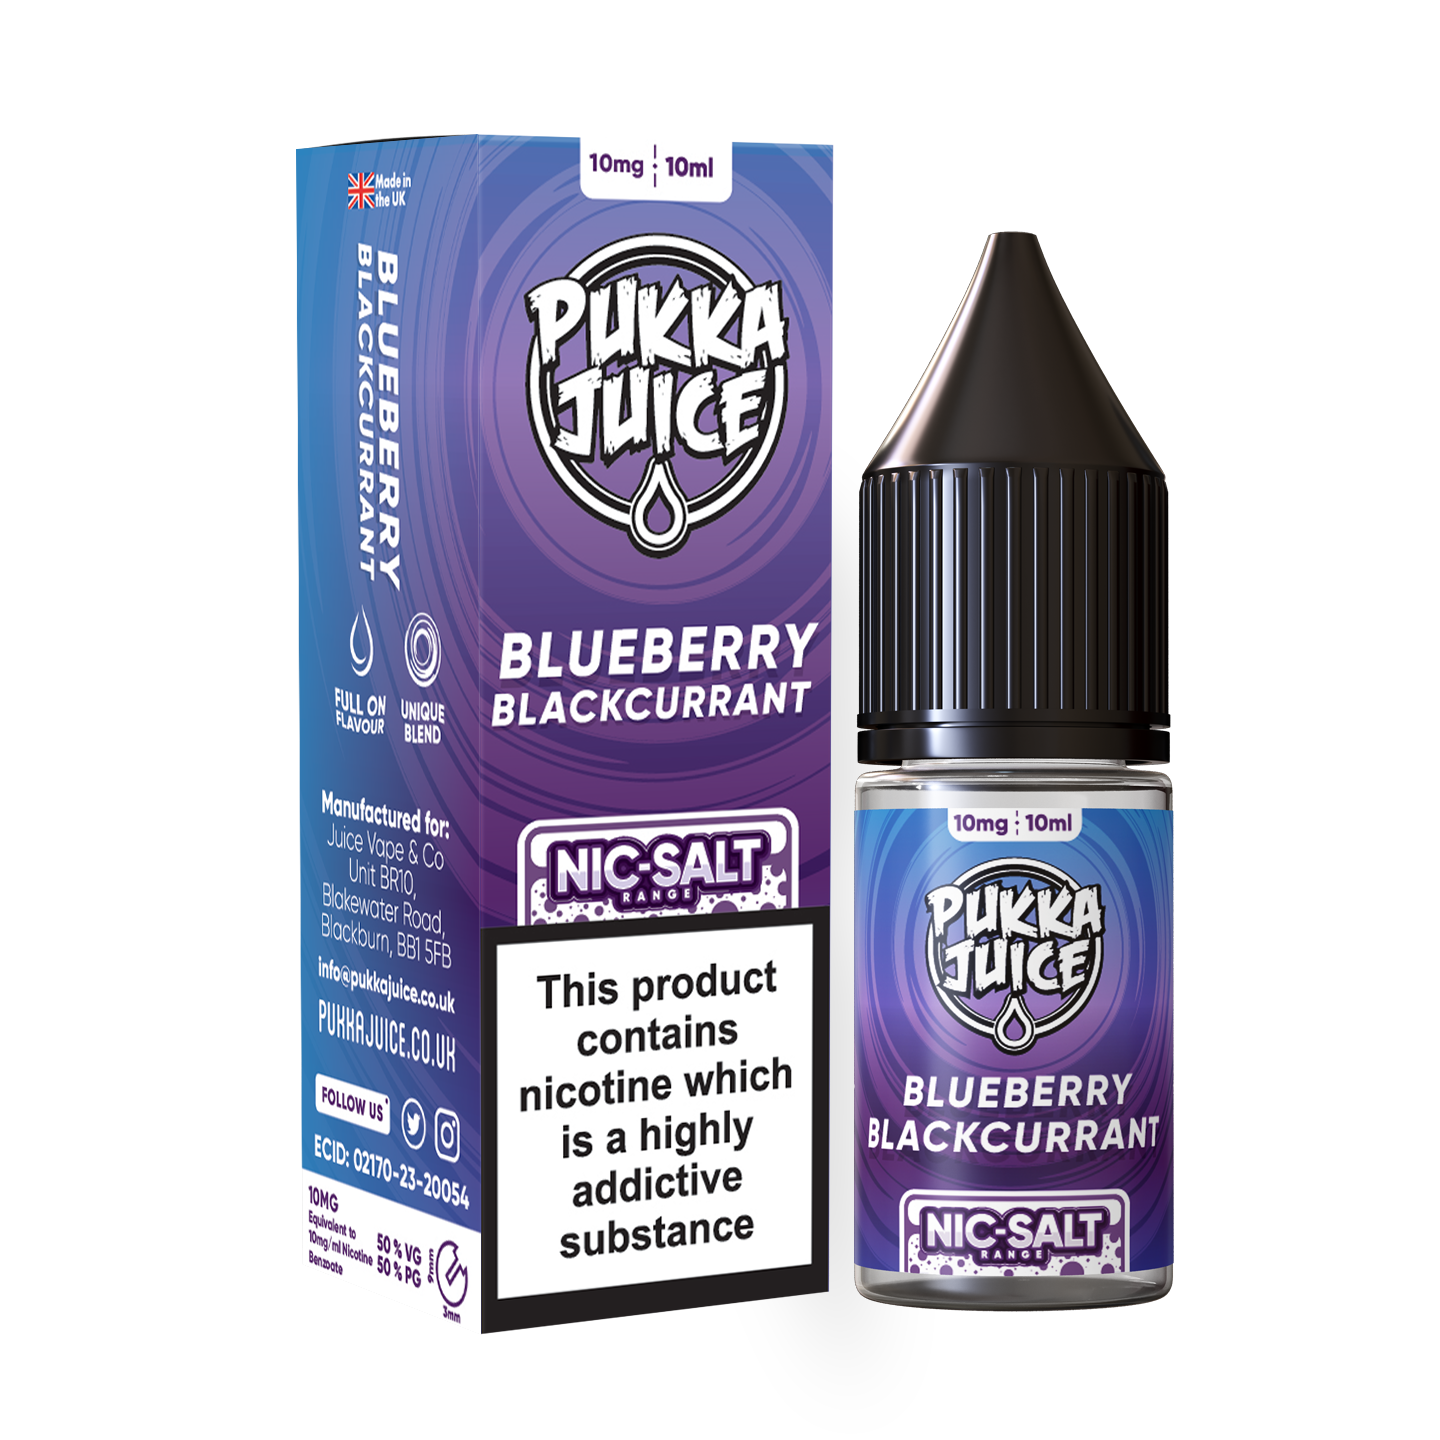 Product Image Of Blueberry Blackcurrant Nic Salt E-Liquid By Pukka Juice